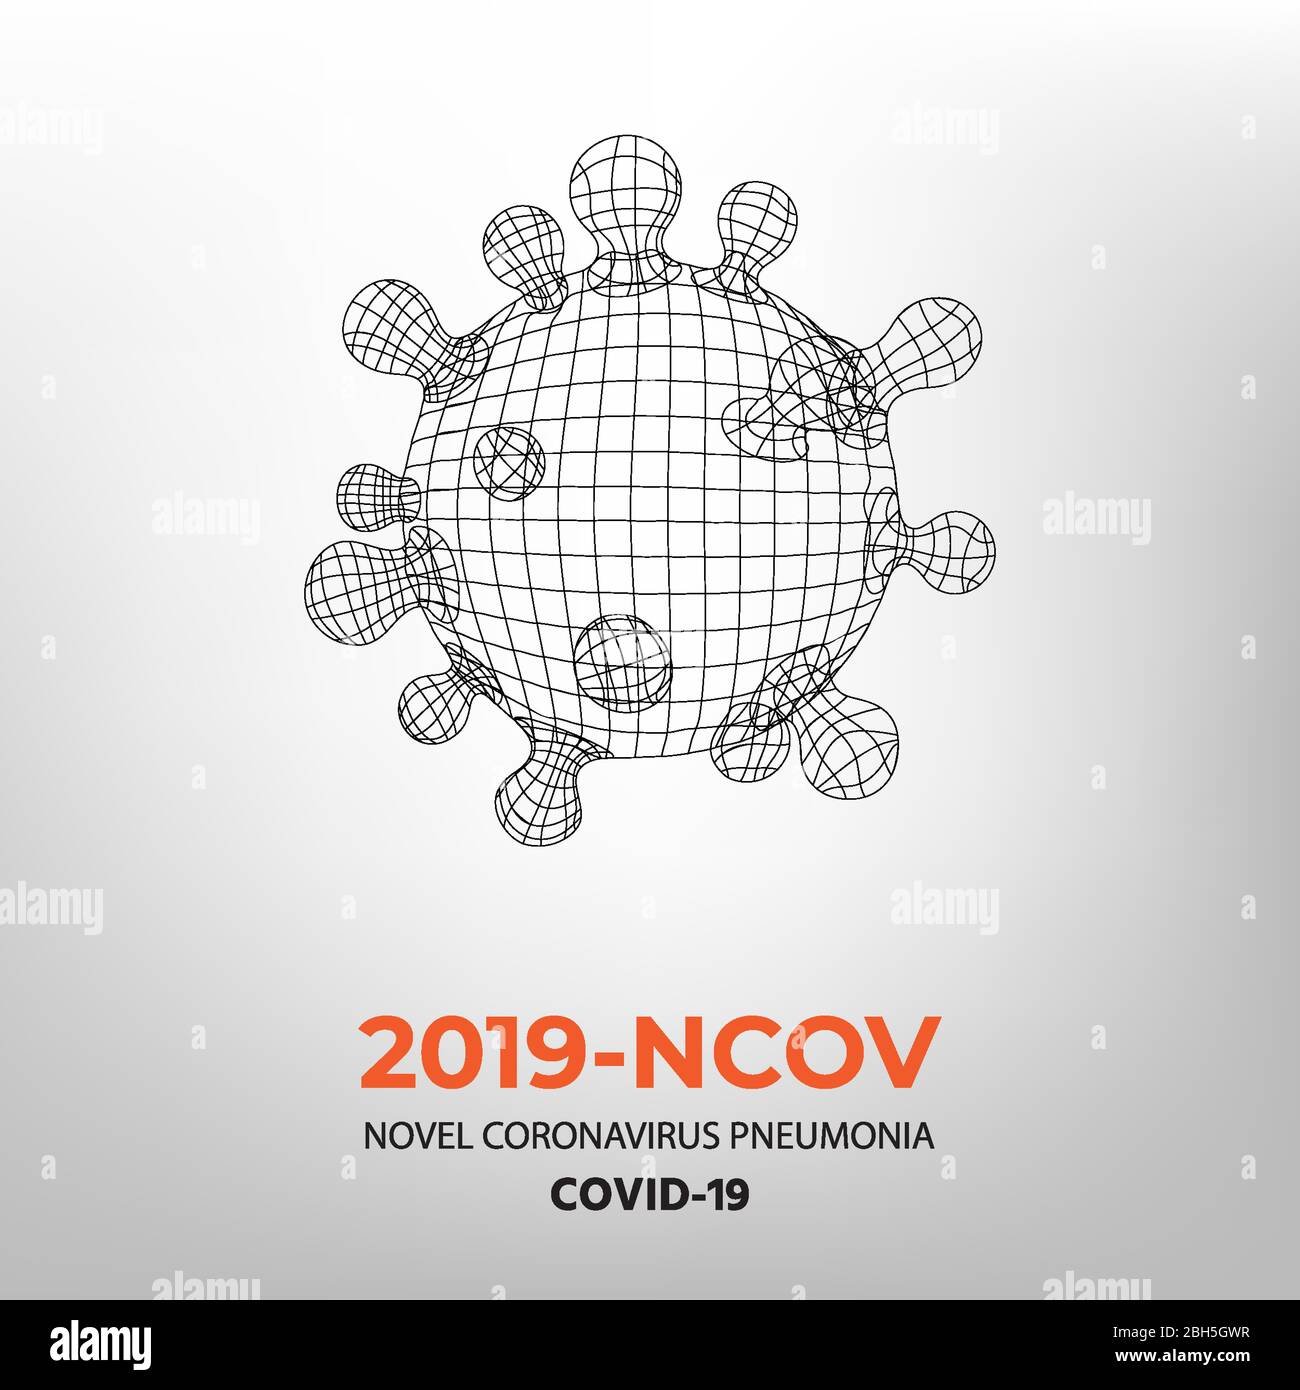 Novel Coronavirus 2019-nCoV. Virus Covid 19-NCP. SARS CoV 2 ist EIN einsträngiges RNA-VIRUS. Polygonnetz der viralen Zelle auf hellem Hintergrund. Linearer Umriststil mit Beispieltext. Einfacher Vektor. Stock Vektor